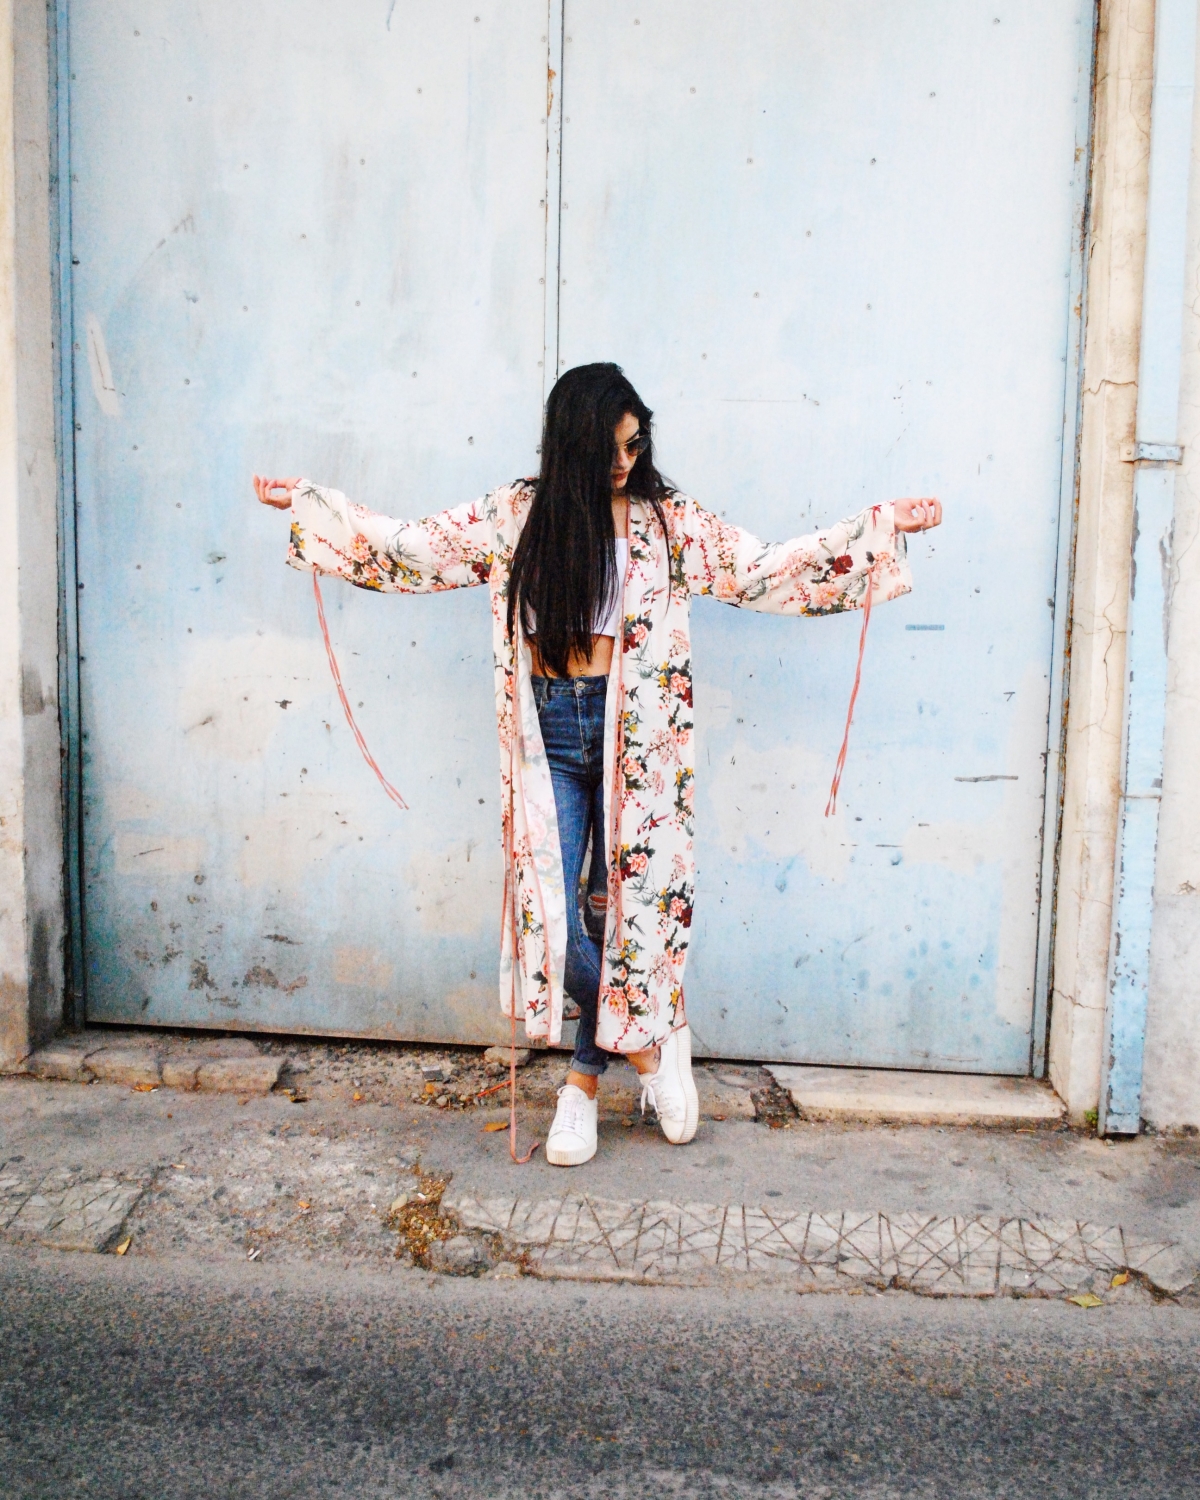 Kimono: When culture inspires fashion!